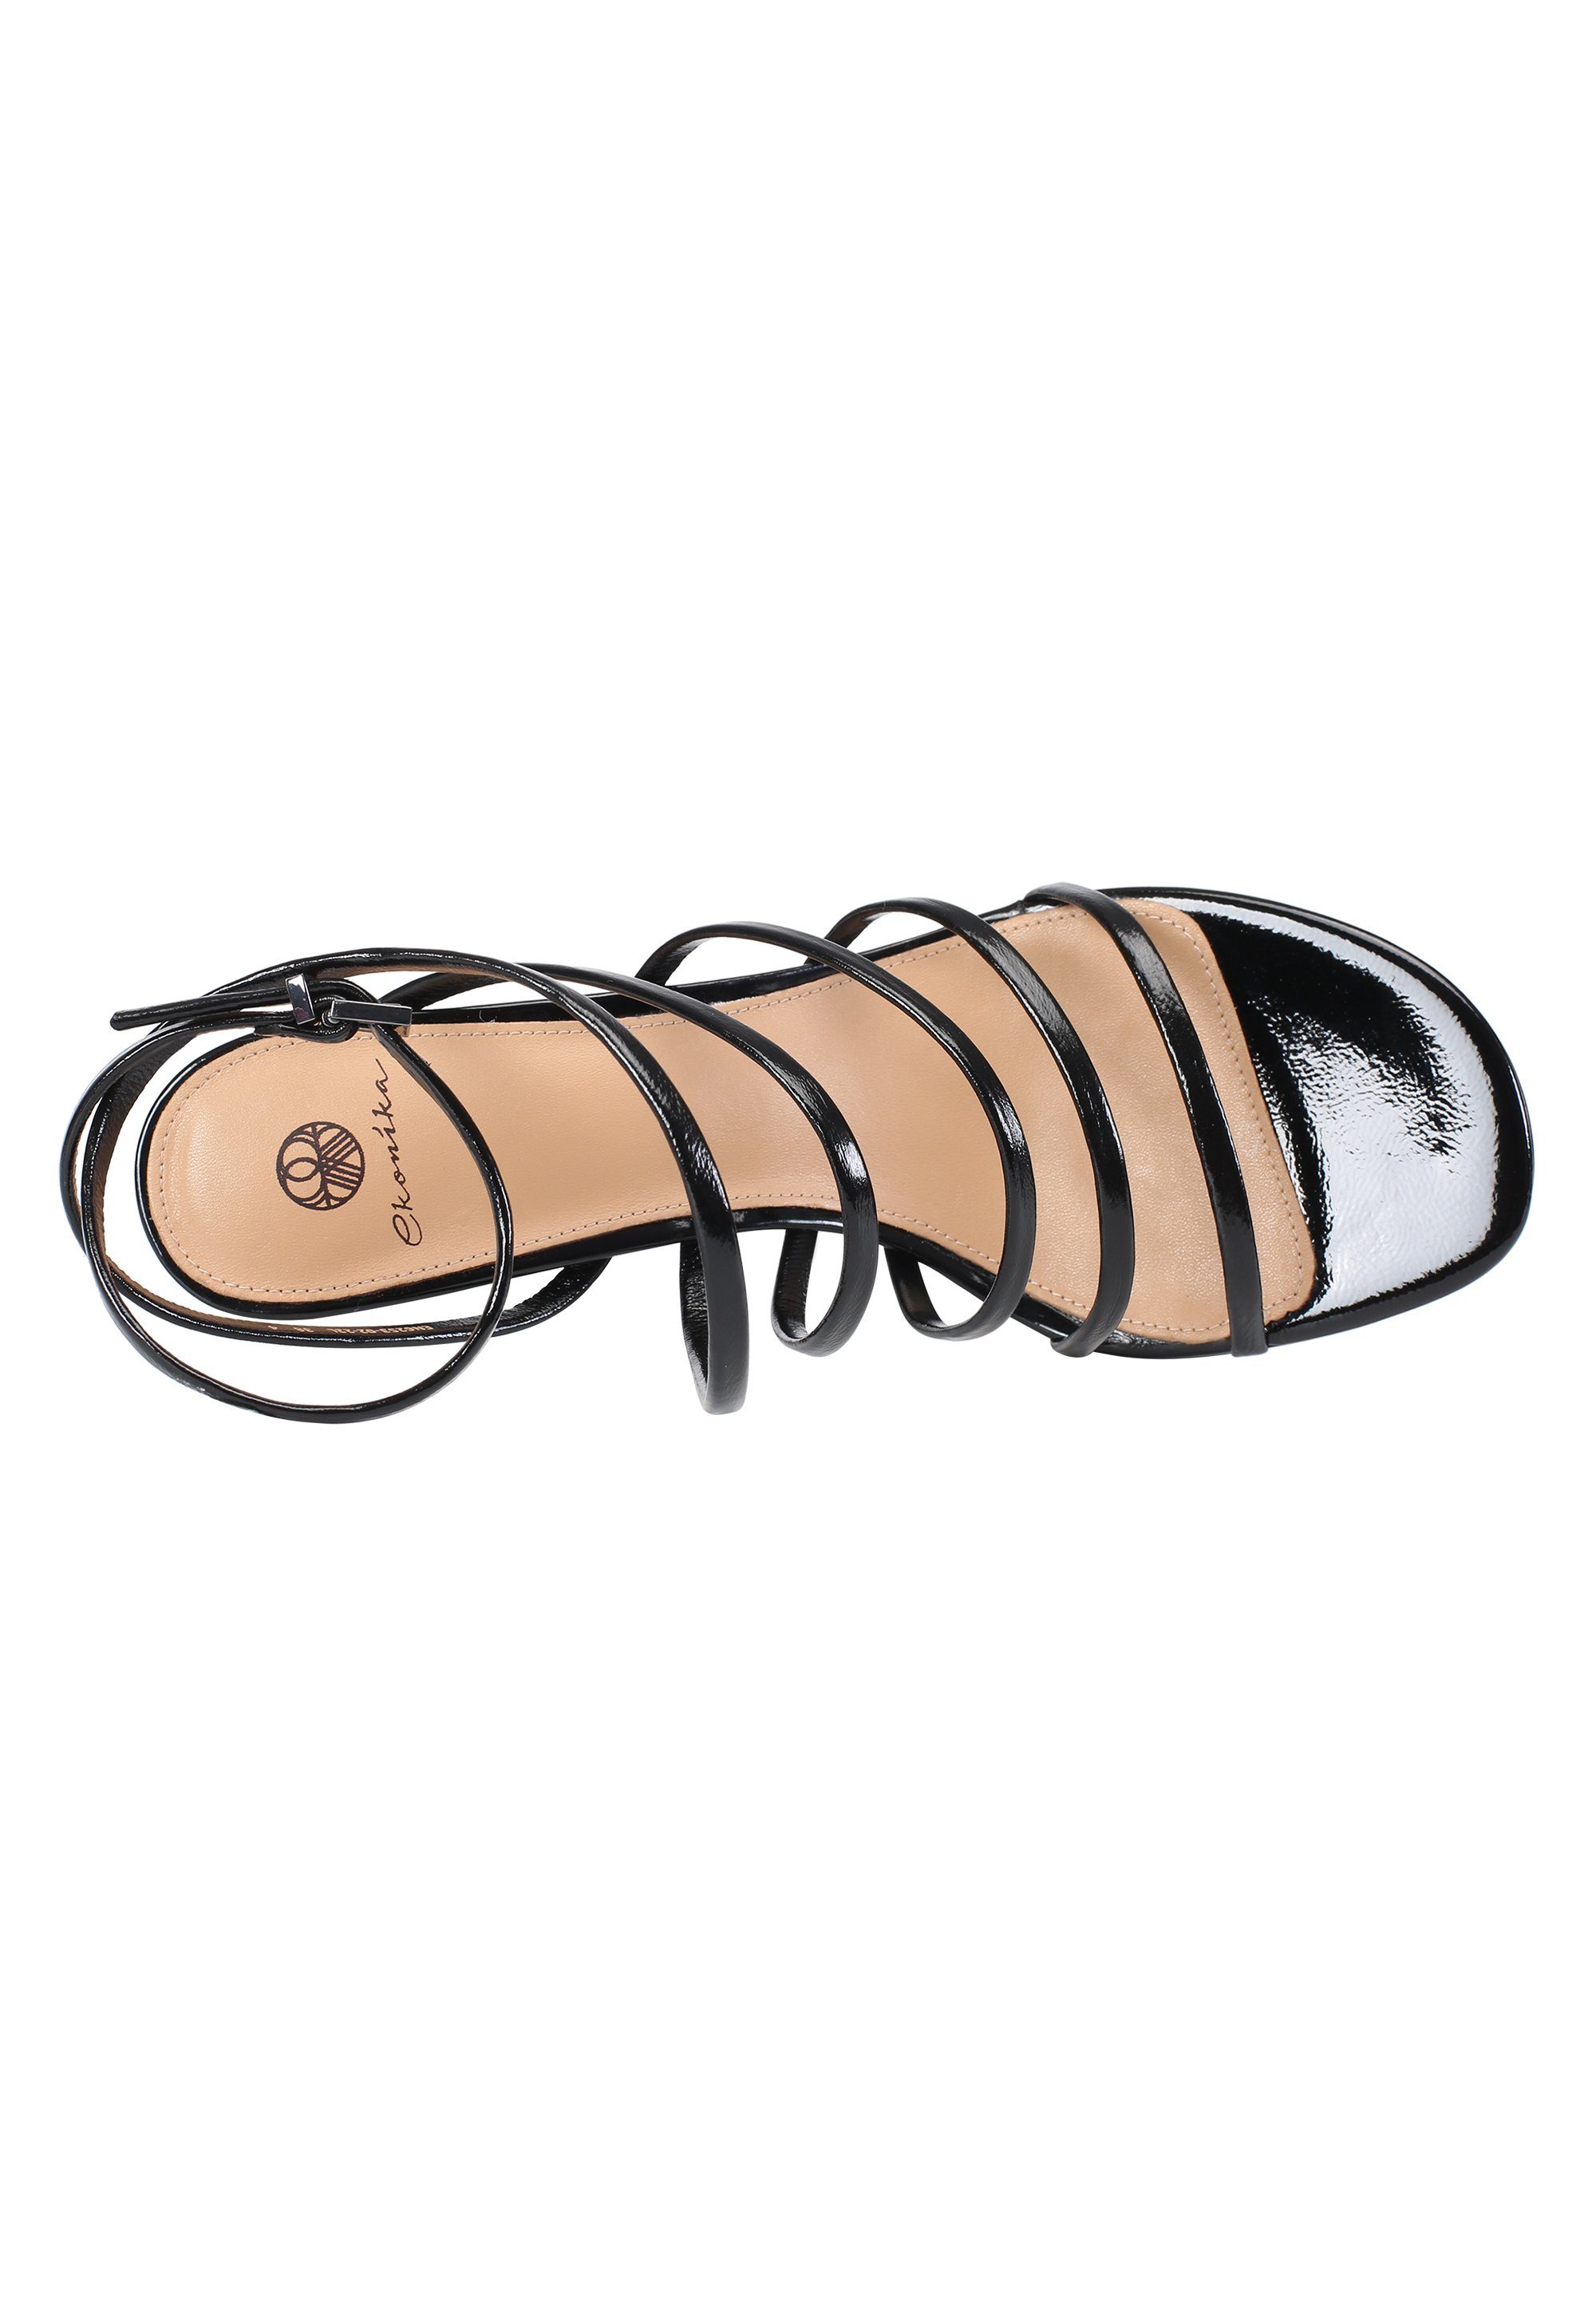 Schuhe Sandalen ekonika Riemchenschuhe EKONIKA Sandale mit filigranen Riemchen